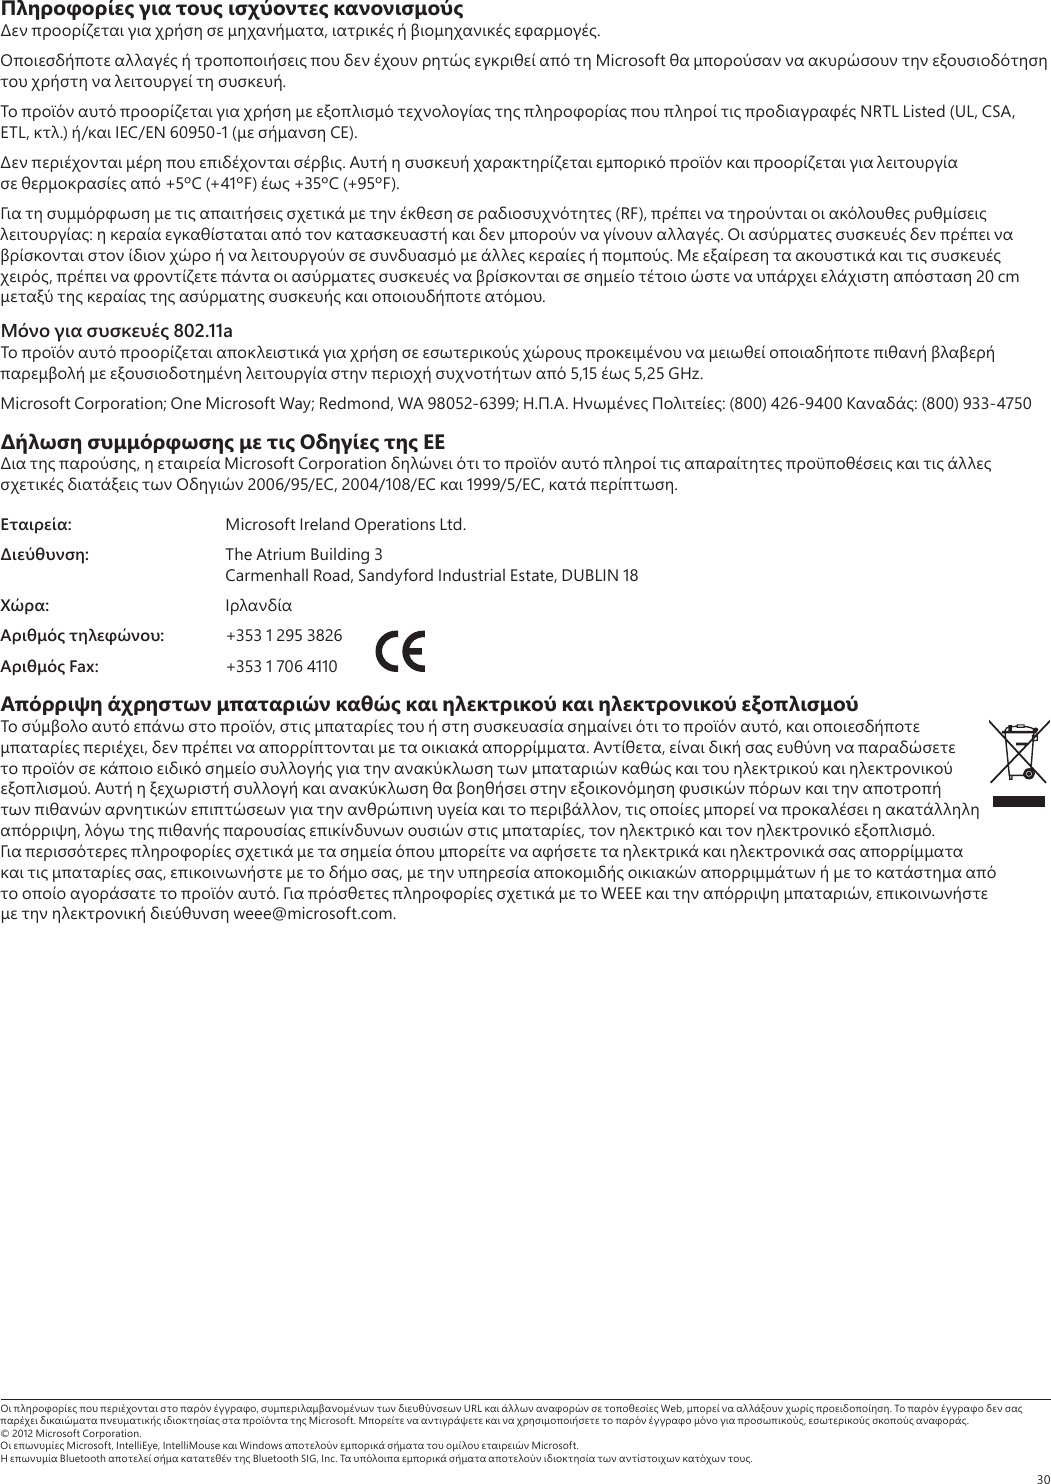 30Πληροφορίες για τους ισχύοντες κανονισμούς     ,    .           Microsoft            .               NRTL Listed (UL, CSA, ETL, .) / IEC/EN 60950-1 (  CE).     .              +5ºC (+41ºF)  +35ºC (+95ºF).            (RF),       :            .                    .        ,                  20 cm         .Μόνο για συσκευές 802.11a                        5,15  5,25 GHz.Microsoft Corporation; One Microsoft Way; Redmond, WA 98052-6399; ...  : (800) 426-9400 : (800) 933-4750Δήλωση συμμόρφωσης με τις Οδηγίες της ΕΕ  ,   Microsoft Corporation                 2006/95/EC, 2004/108/EC  1999/5/EC,  .Εταιρεία:  Microsoft Ireland Operations Ltd.Διεύθυνση:  The Atrium Building 3  Carmenhall Road, Sandyford Industrial Estate, DUBLIN 18Χώρα: Αριθμός τηλεφώνου:  +353 1 295 3826Αριθμός Fax:  +353 1 706 4110 Απόρριψη άχρηστων μπαταριών καθώς και ηλεκτρικού και ηλεκτρονικού εξοπλισμού     ,           ,    ,        . ,                         .                          ,        ,        ,      .                     ,     ,                 .       WEEE    ,      weee@microsoft.com.      ,    URL      Web,     .             Microsoft.            ,   .© 2012 Microsoft Corporation.  Microsoft, IntelliEye, IntelliMouse  Windows       Microsoft.  Bluetooth     Bluetooth SIG, Inc.          .